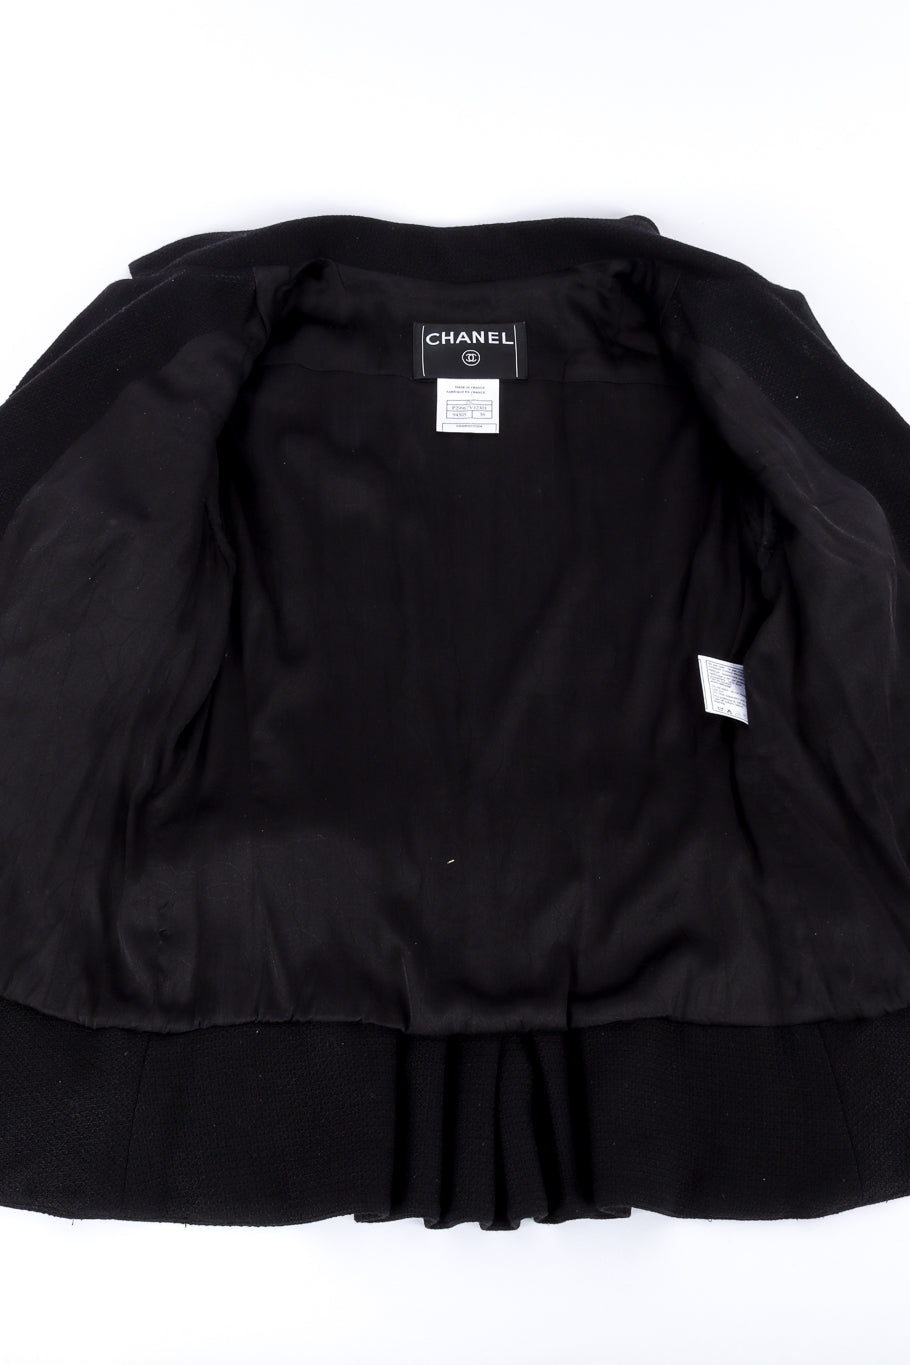 Chanel 2007C S/S Peplum Skirt Suit view of jacket lining @recessla